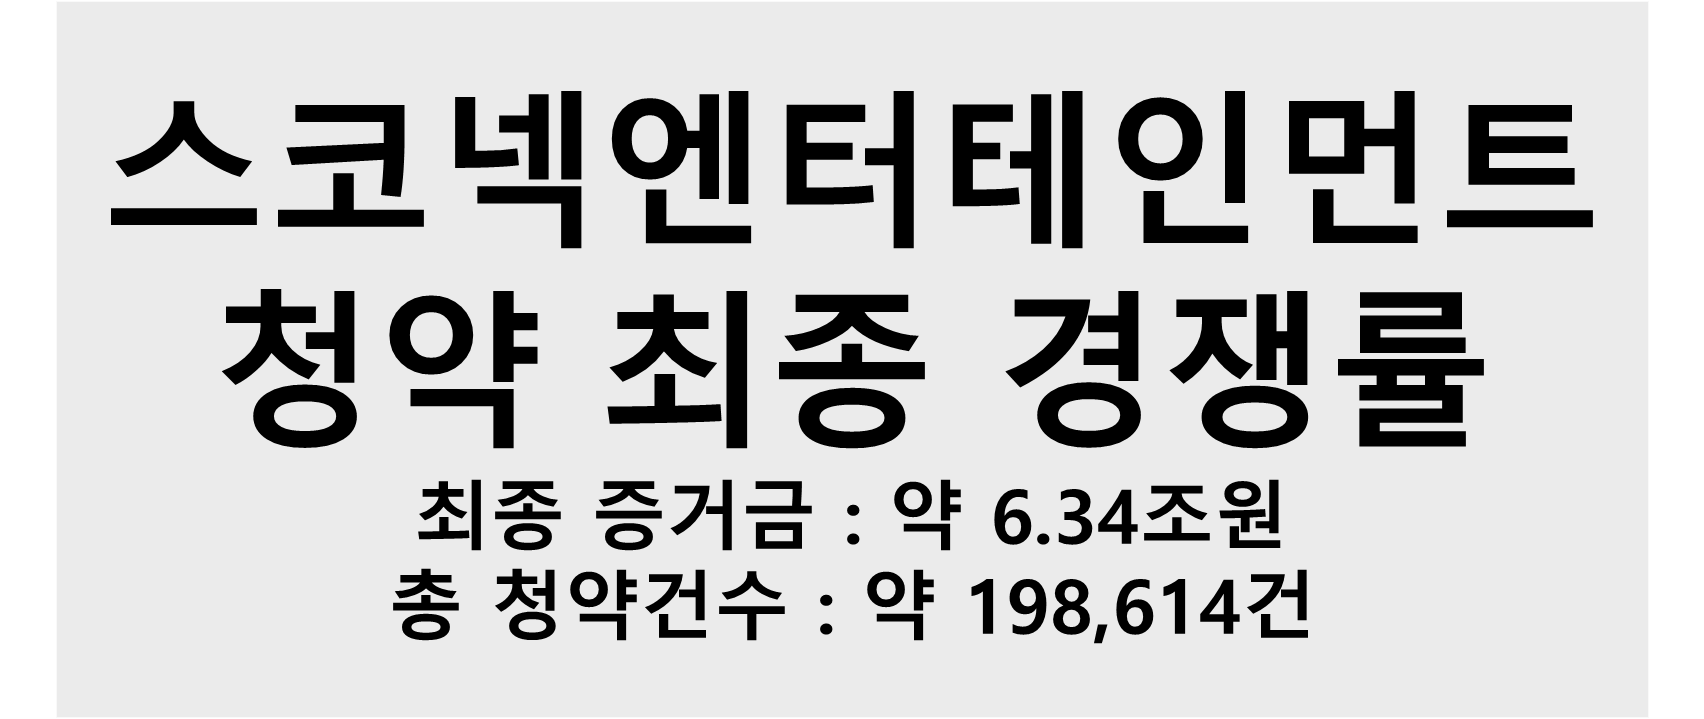 스코넥엔터테인먼트 청약 최종 경쟁률